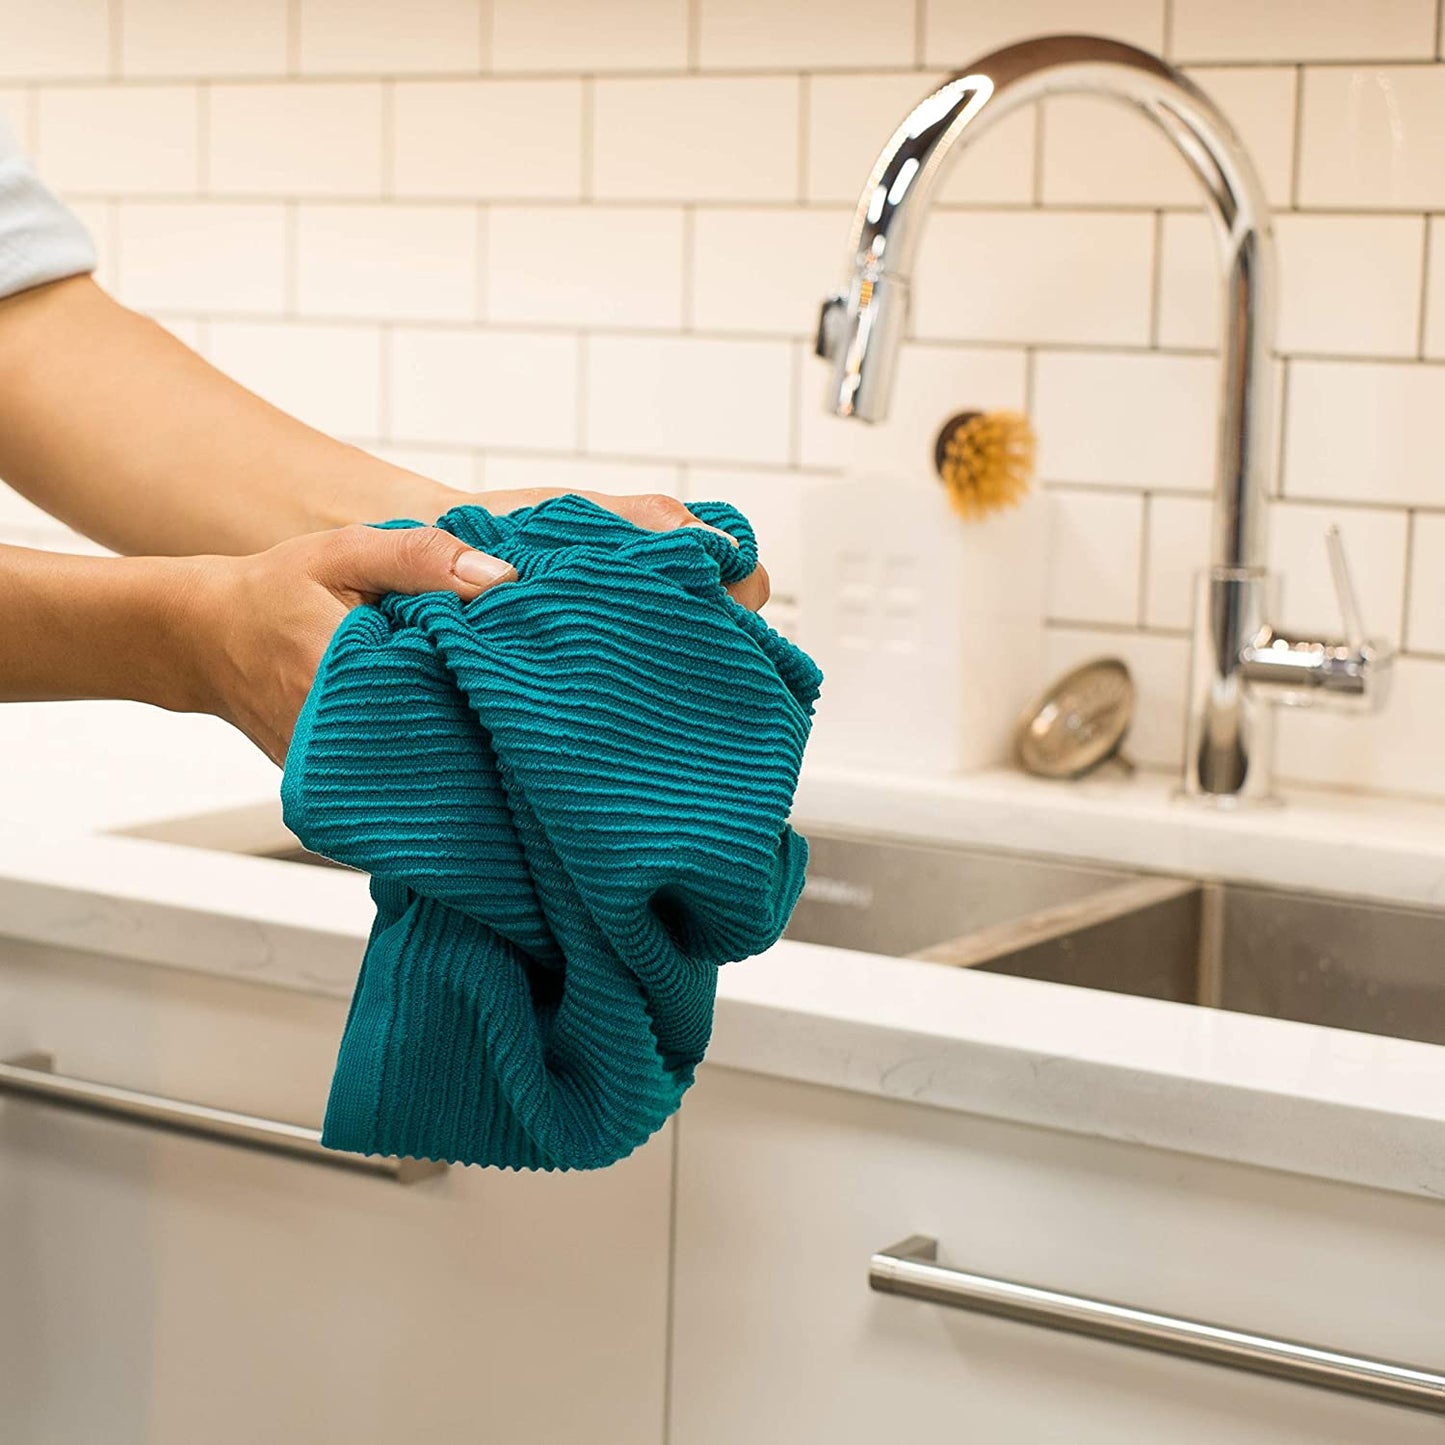 hands holding dishtowel at kitchen sink.